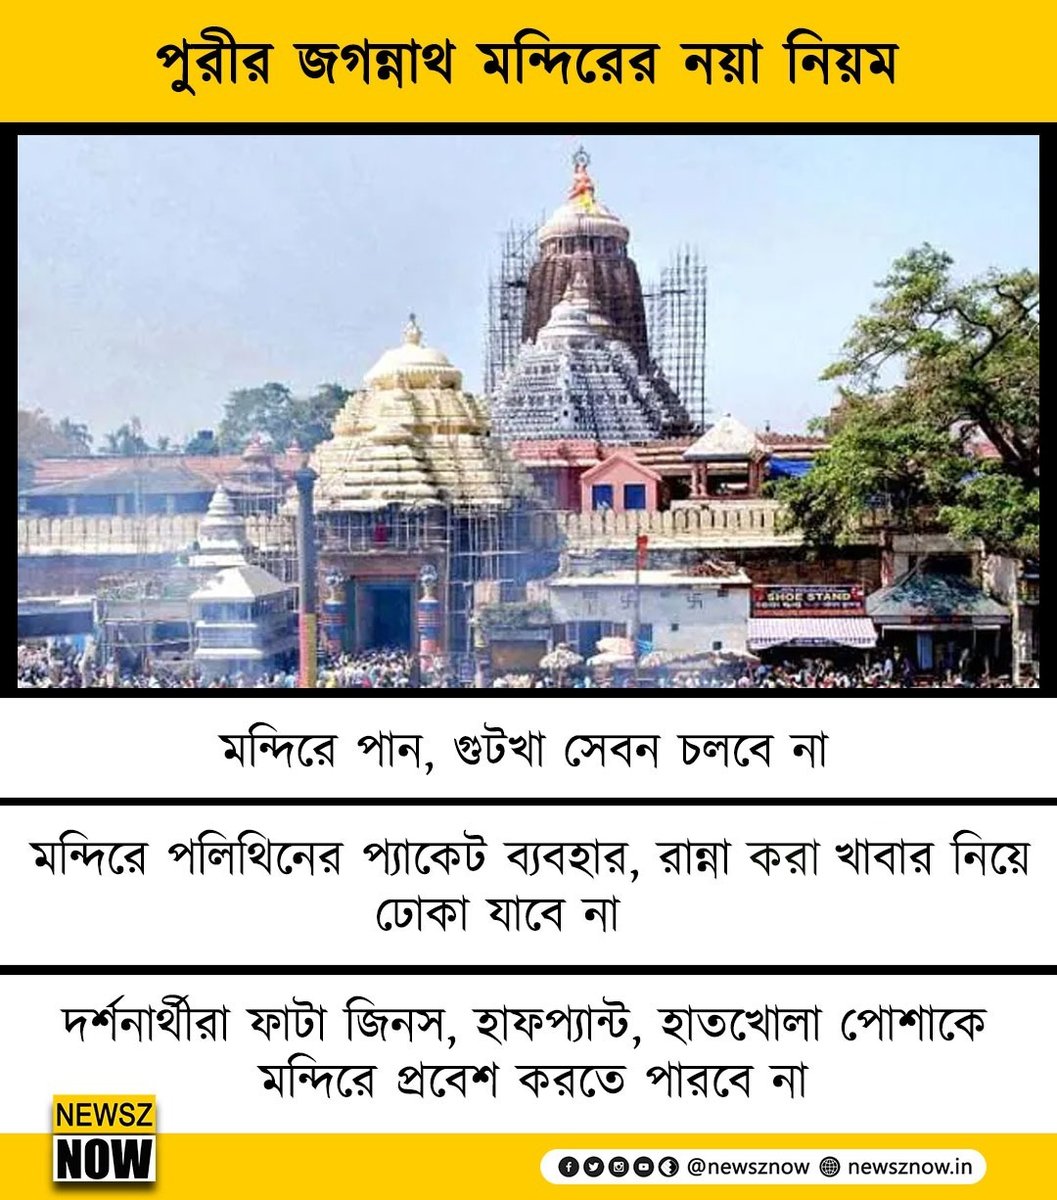 পুরীর জগন্নাথ মন্দিরে নয়া নিয়ম

New rule started by #JagannathTemple in #Puri 

#Jagannath #NewszNow